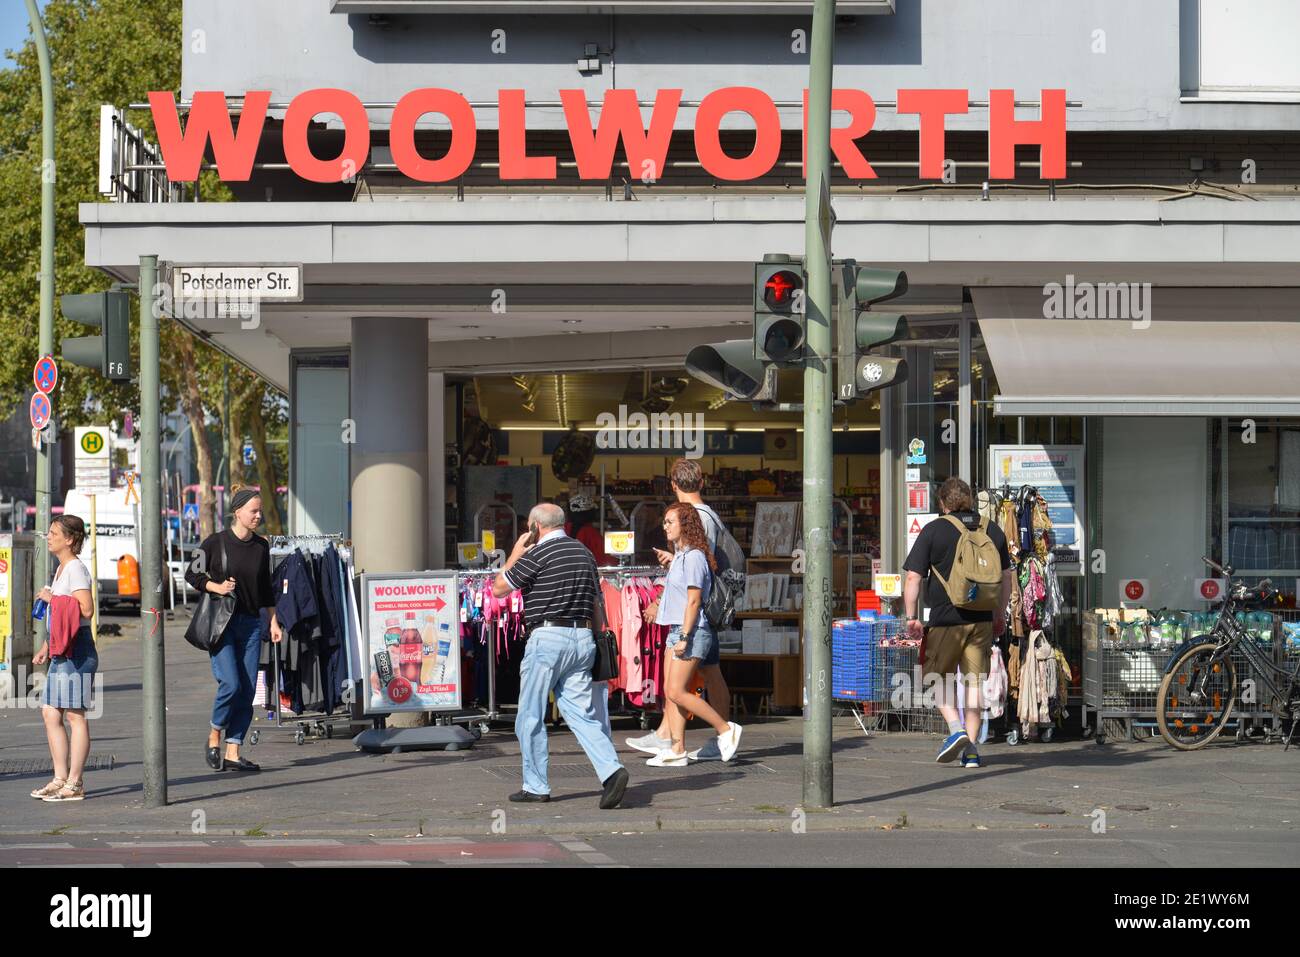 Woolworth, Potsdamer Strasse, Tiergarten, Mitte, Berlin, Deutschland Stock Photo